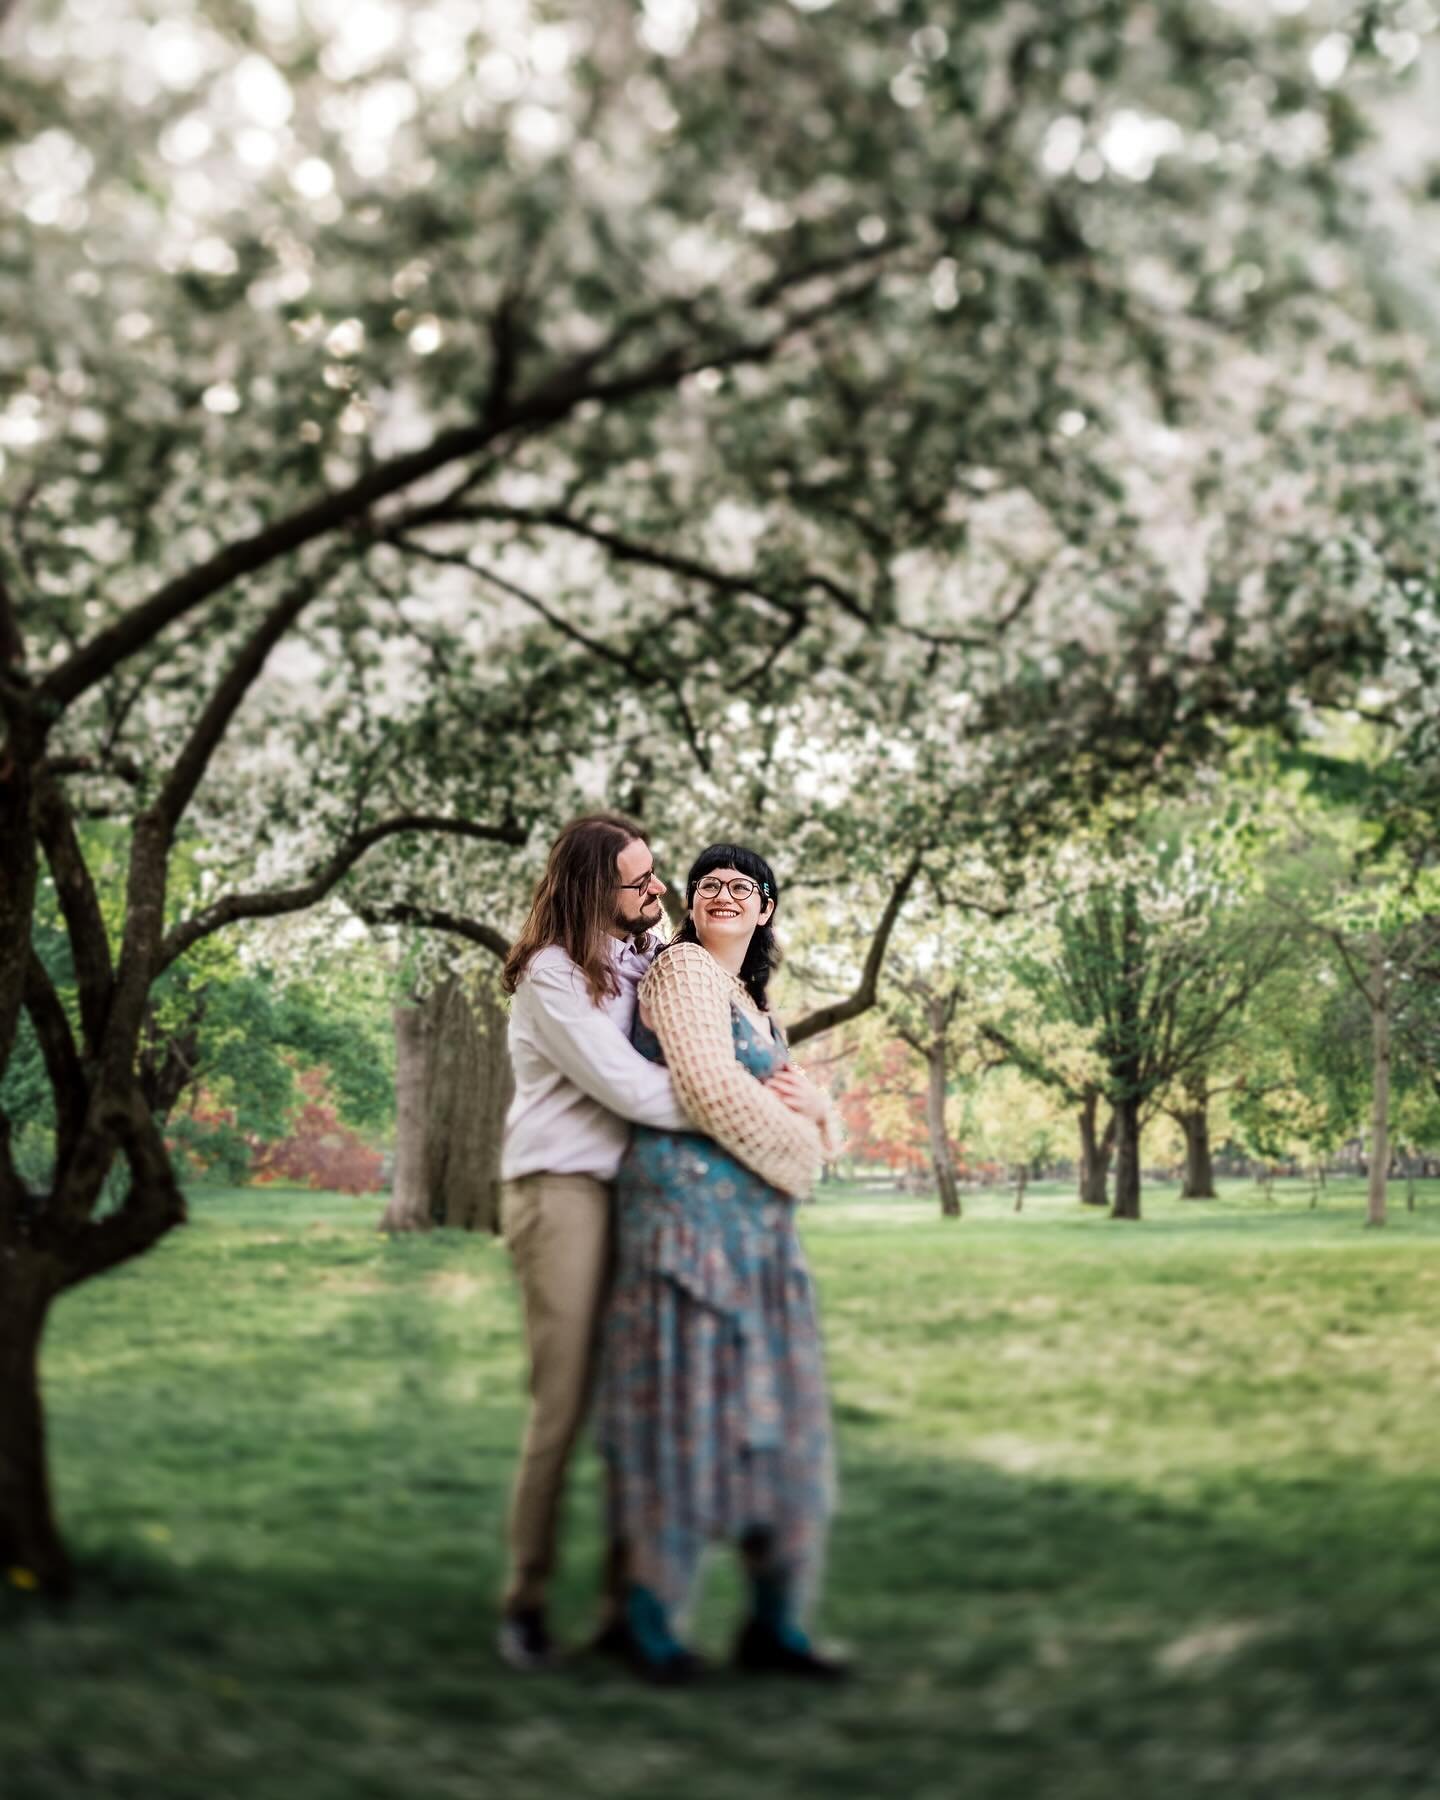 Love blossoms like flowers in the sunlight 🌸☀️ Capturing Maeve and Dylan&rsquo;s radiant joy at Washington Park. 

#EngagementMagic #WashingtonParkMoments

 #WashingtonPark #SpringVibes #CountdownToWedding
#WeddingSeason #kalzphotography #catskillsw